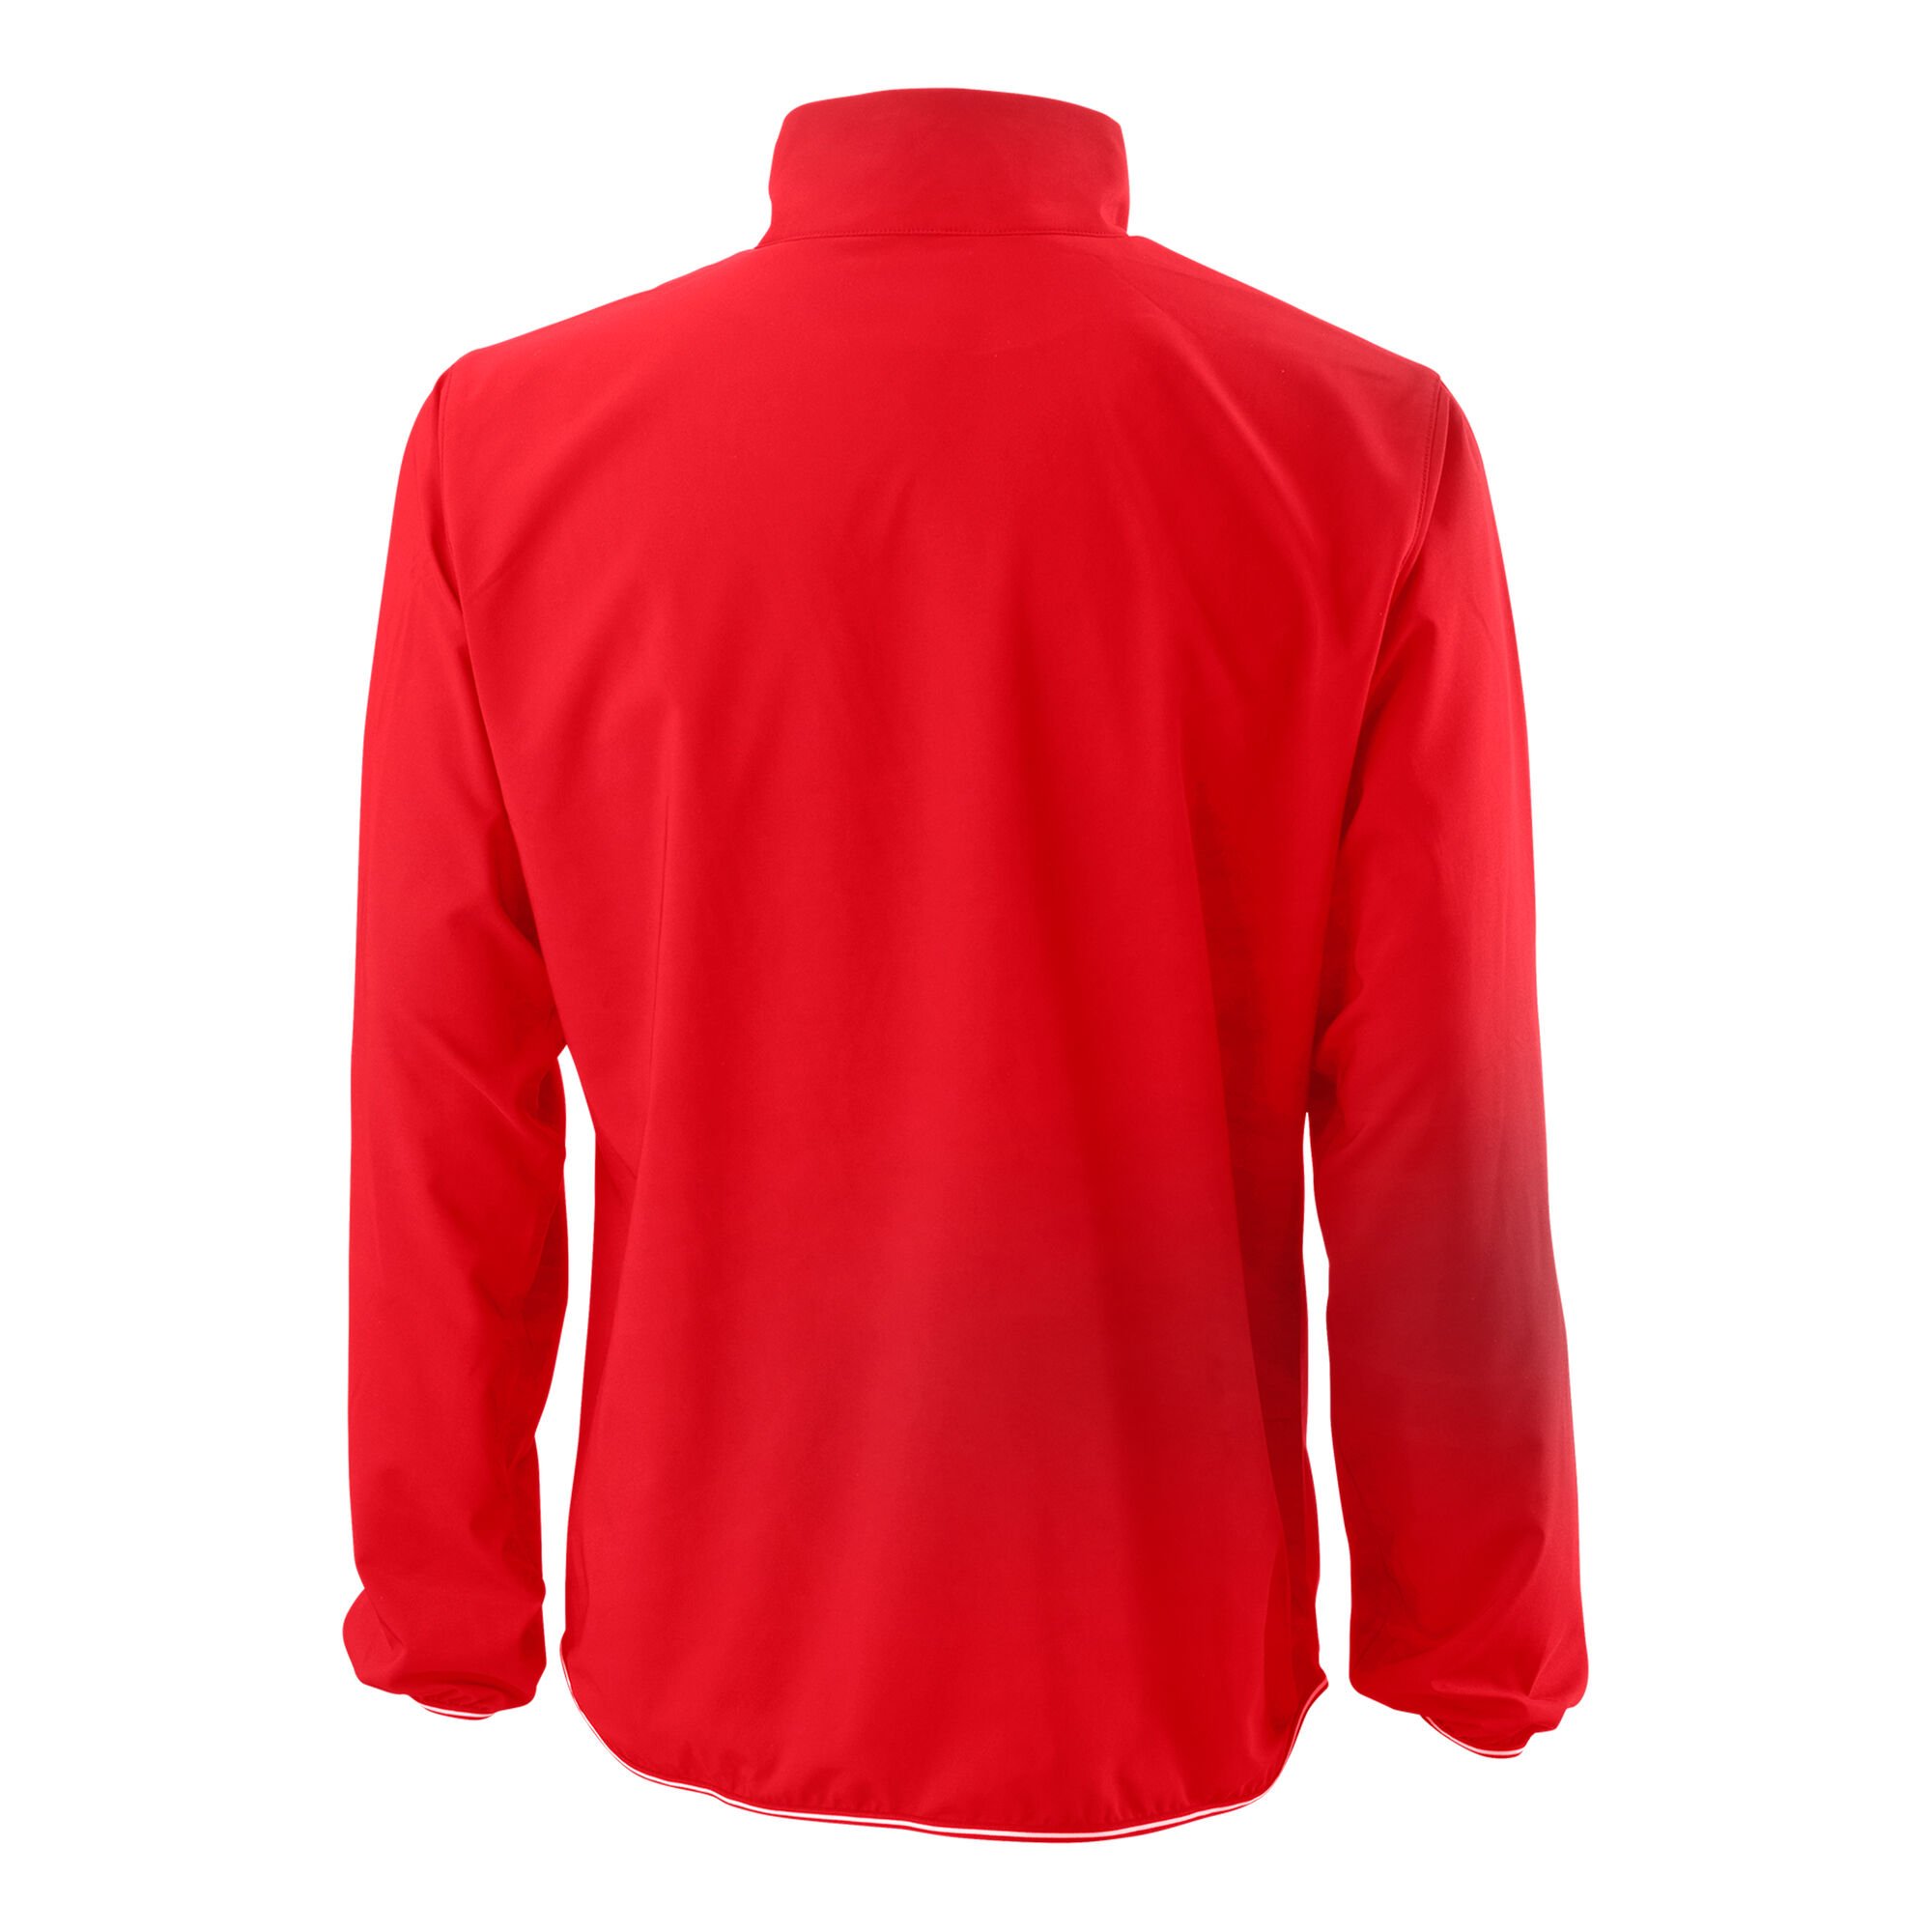 Buy Wilson Training Jacket Men Red, White online